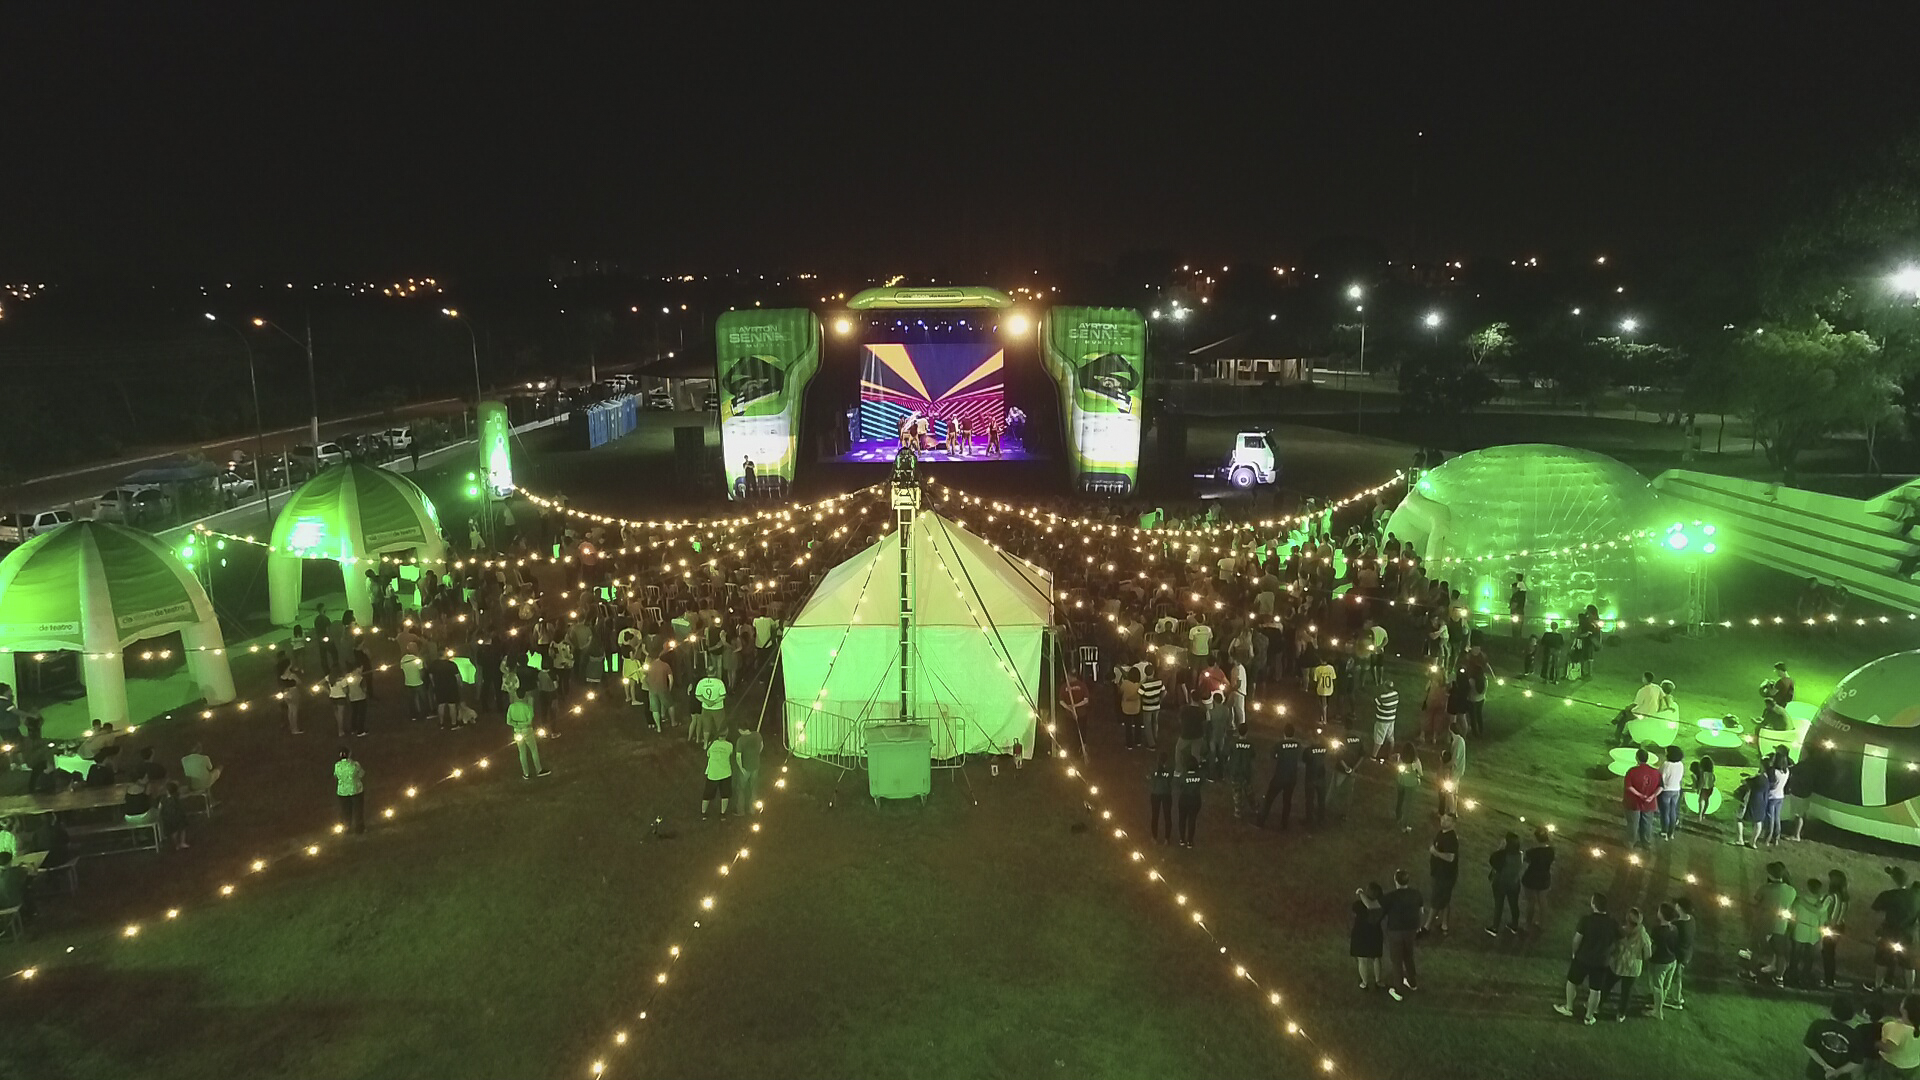 Trupe de musical oferece atividades culturais gratuitas no Parque Raya